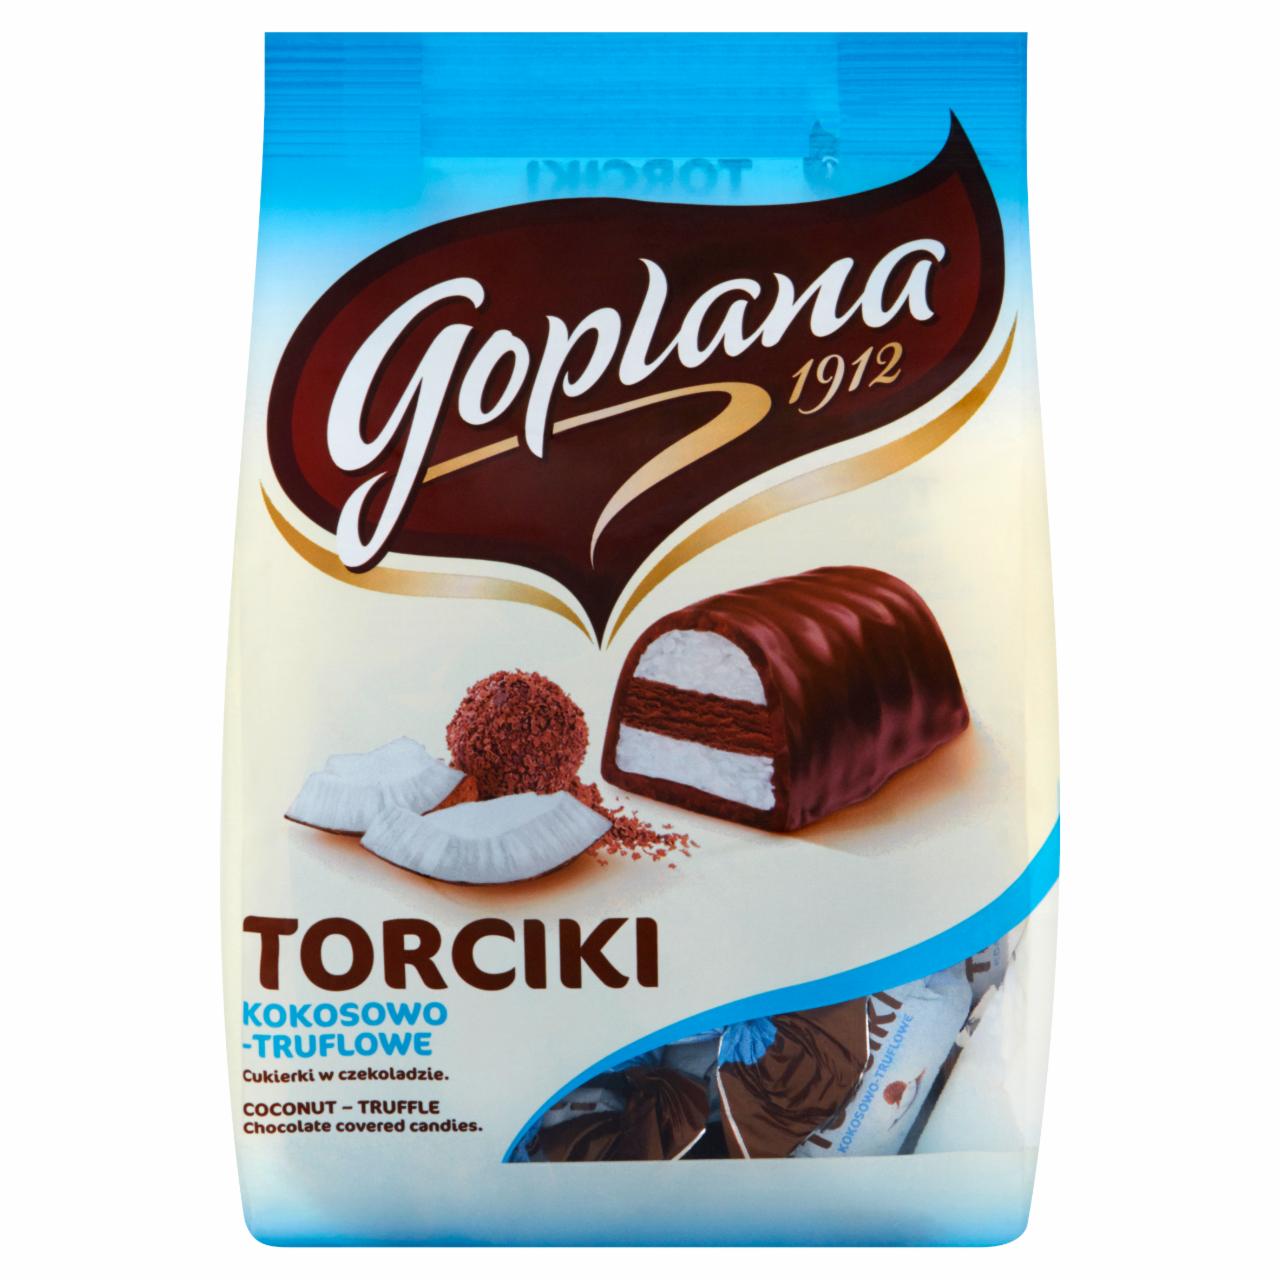 Zdjęcia - Goplana Torciki kokosowo-truflowe Cukierki w czekoladzie 256 g